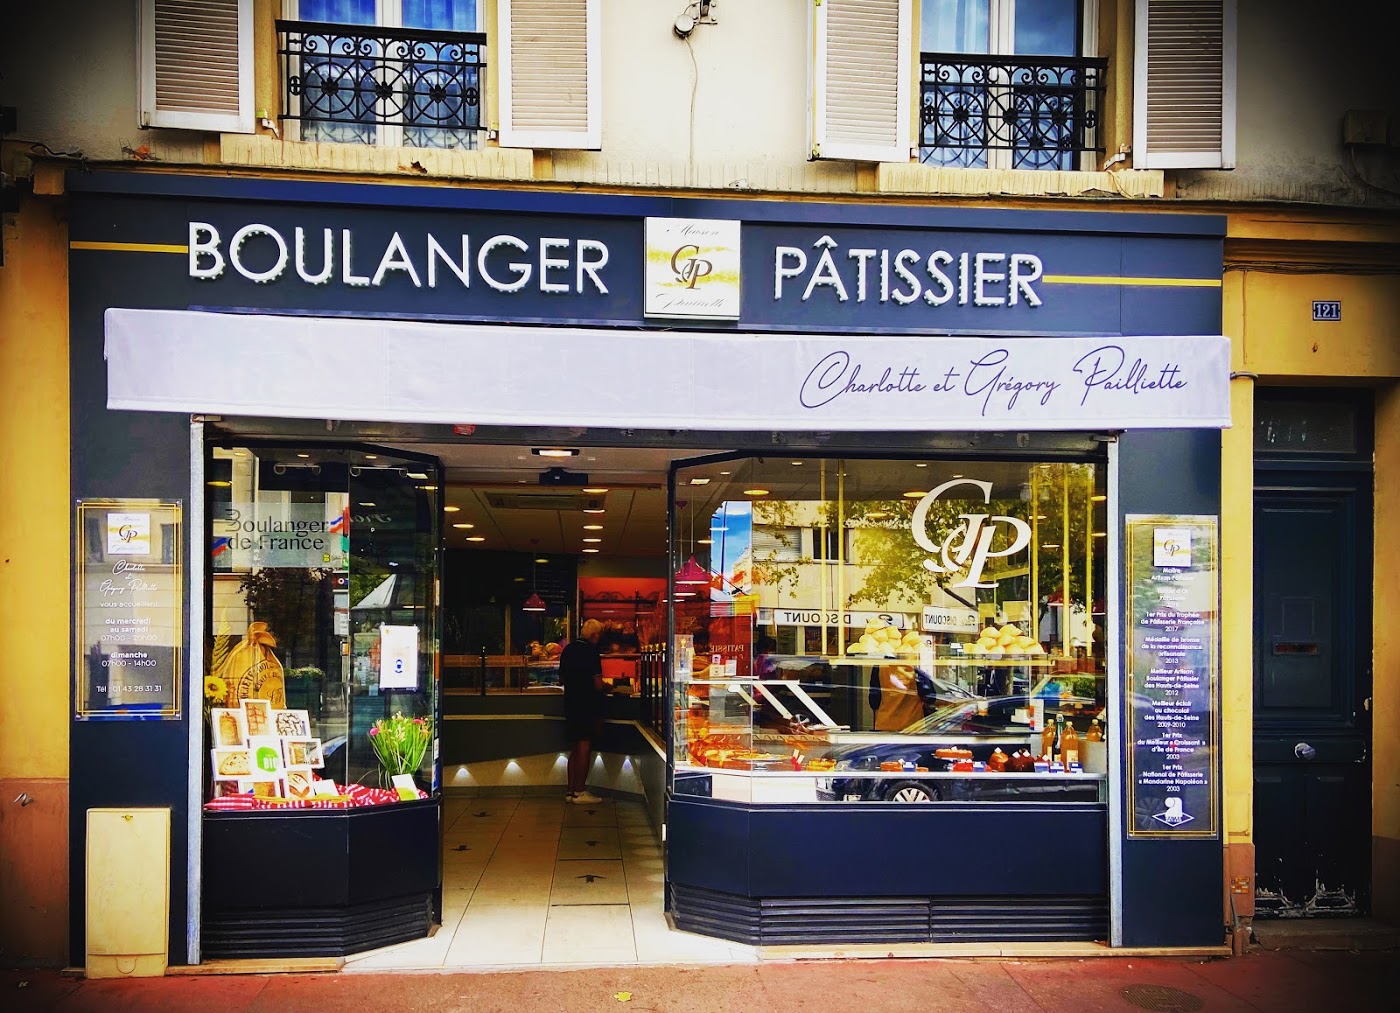 Boulangerie Pâtisserie Maison Pailliette (CG PAILLIETTE)